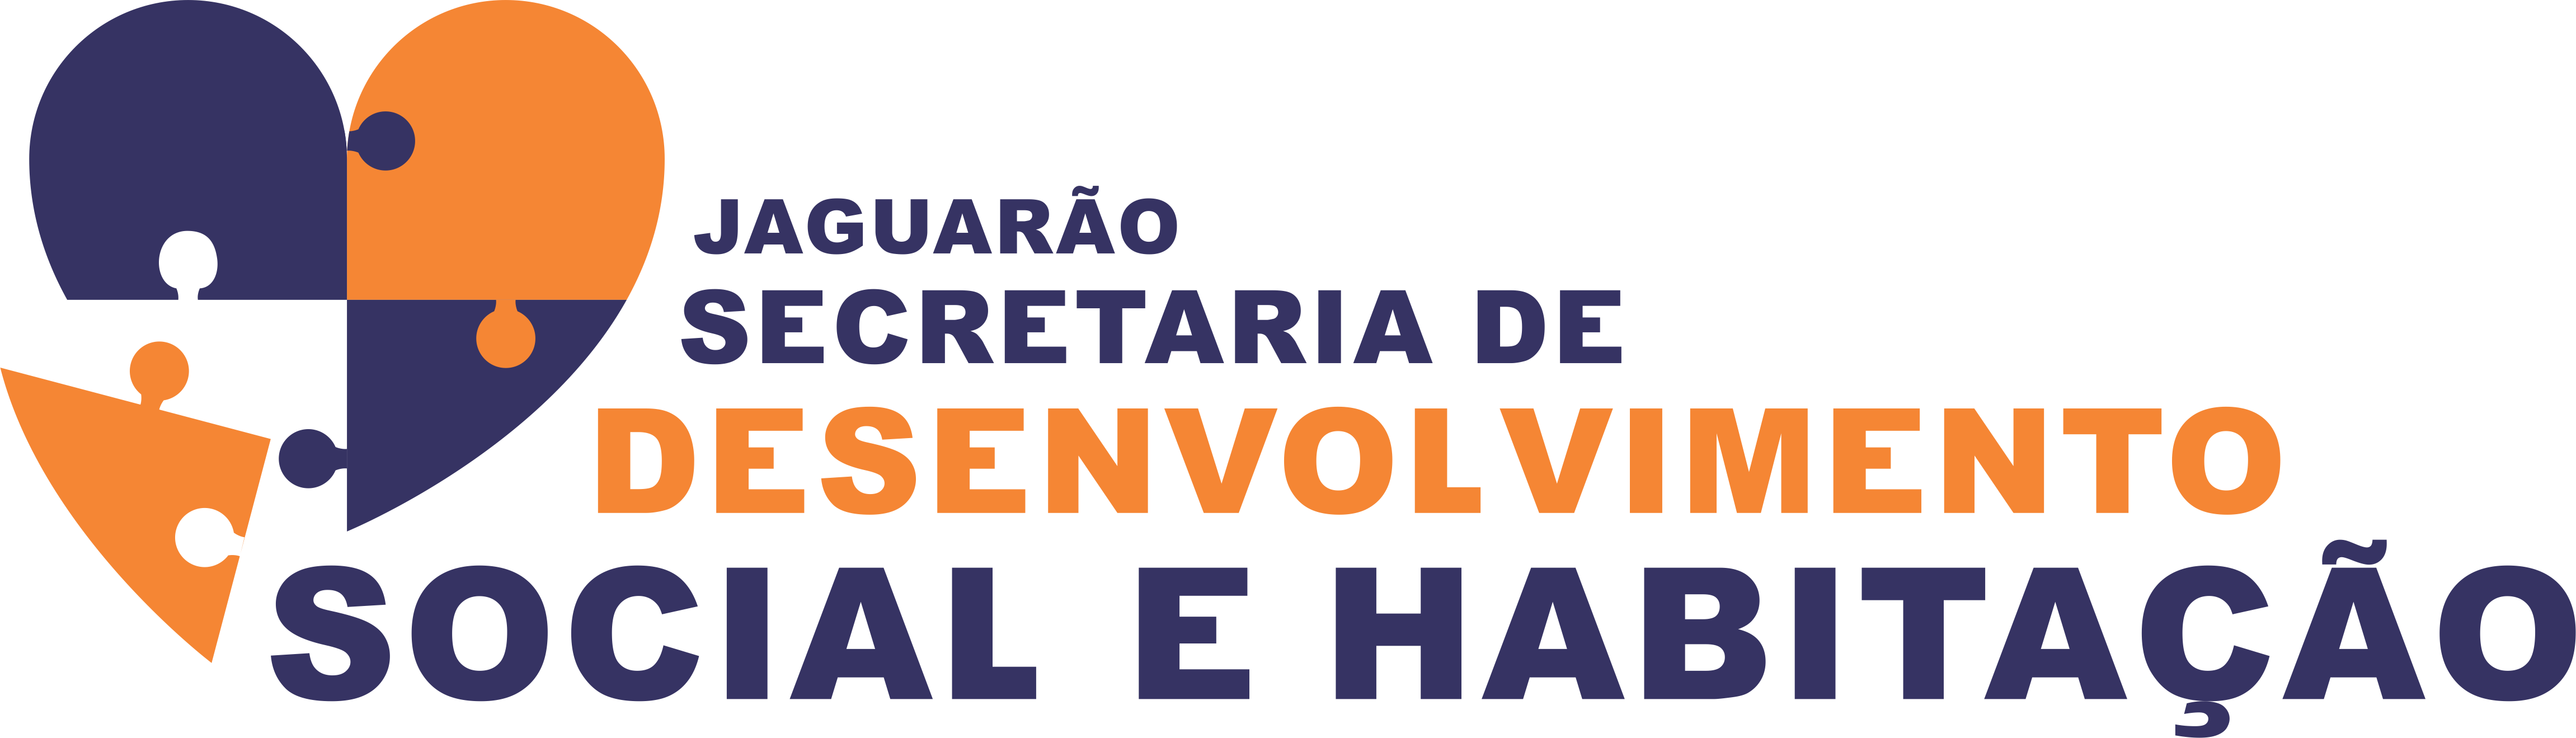 slogan das secretarias DESENVOLVIMENTO HABITAÇÃO NPG